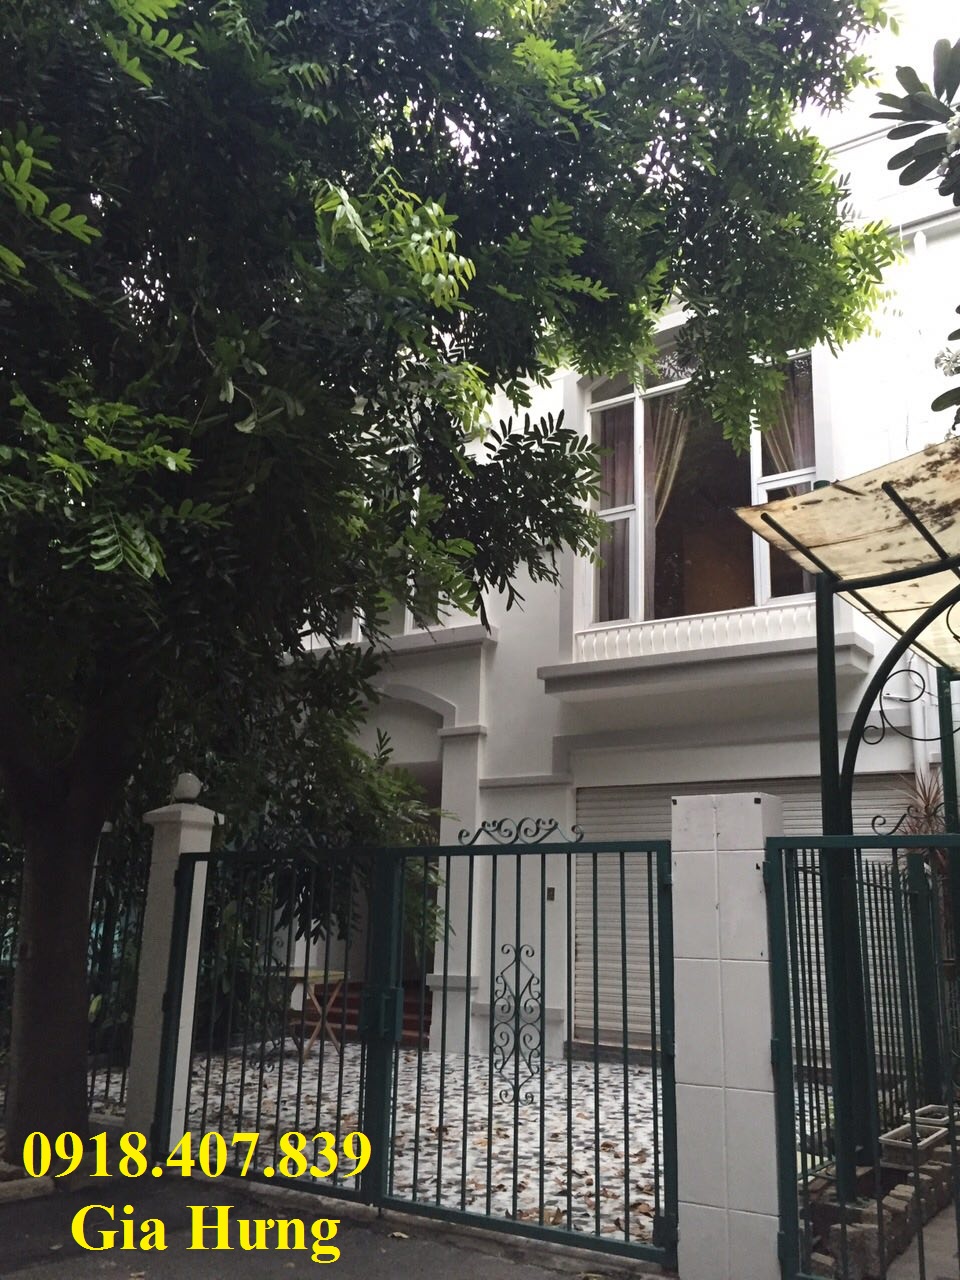 Nhà ít ở cần bán biệt thự Mỹ Thái 2, Phú Mỹ Hưng, quận 7 giá 12 tỷ sổ hồng LH 0918407839(Hưng)